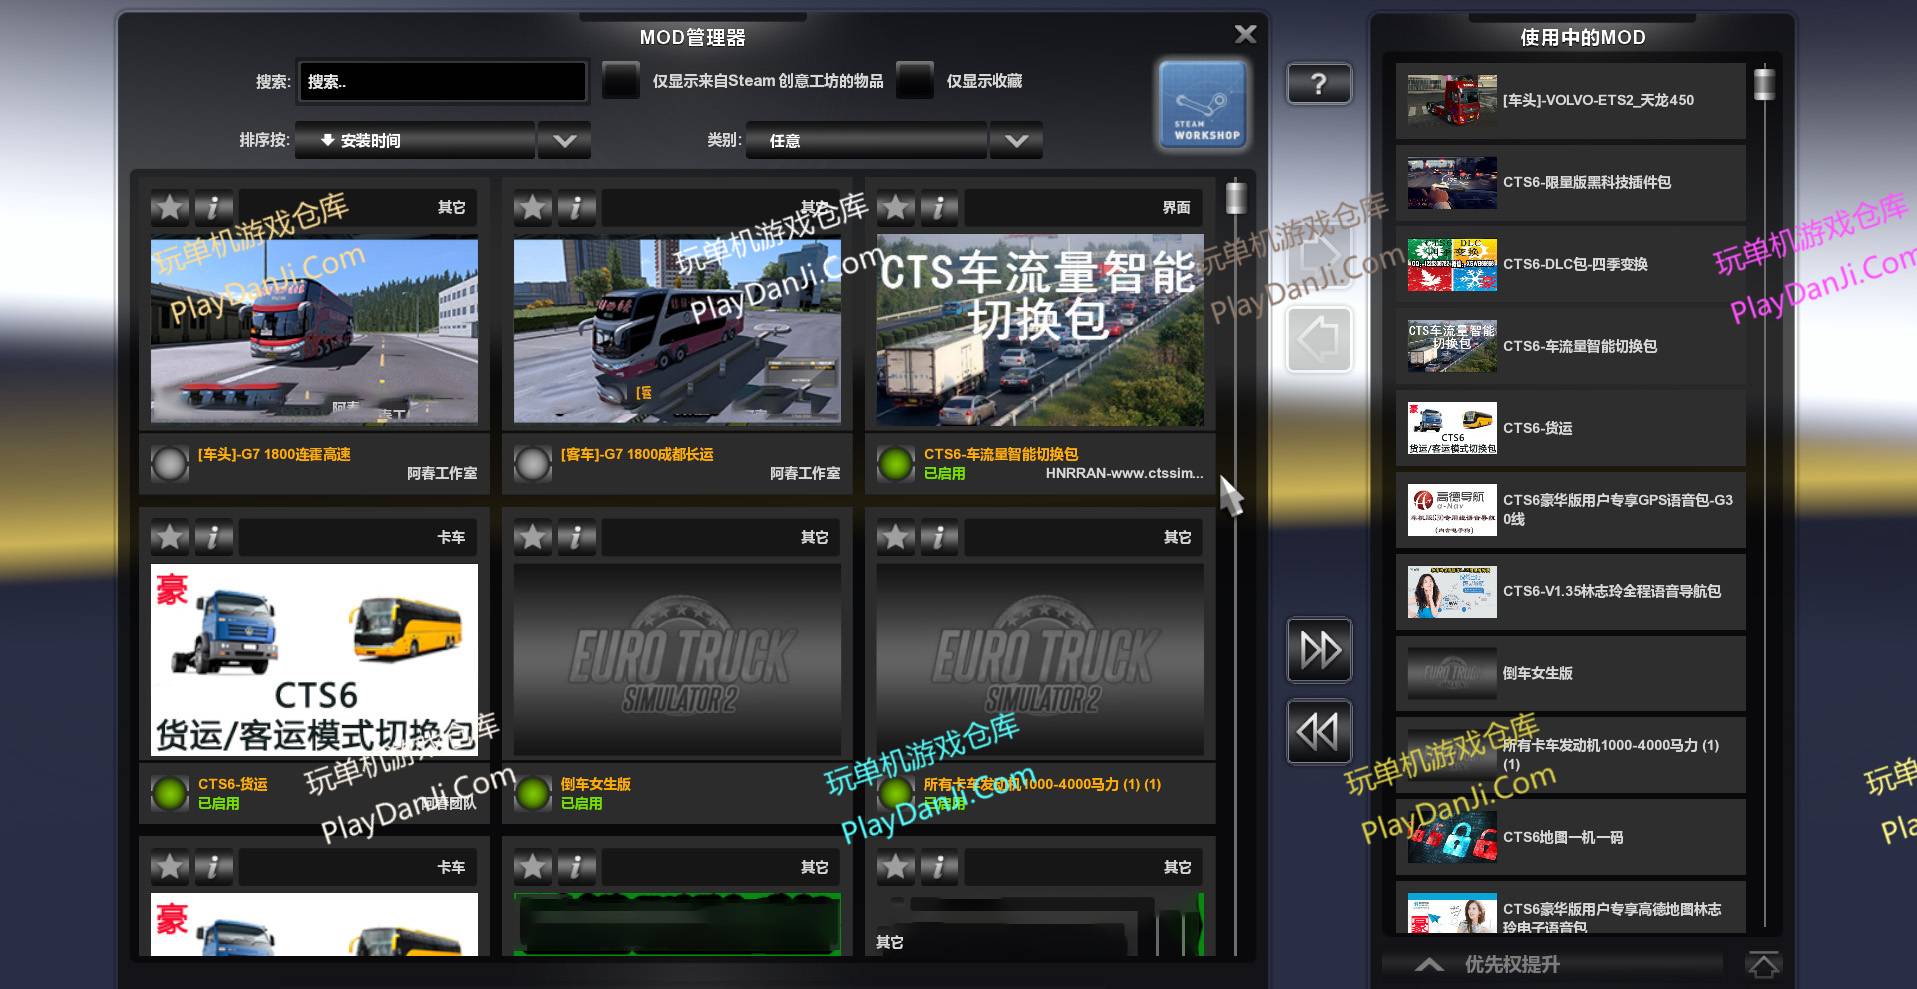 遨游中国2黑金至尊限量版/Euro Truck Simulator 2配图17